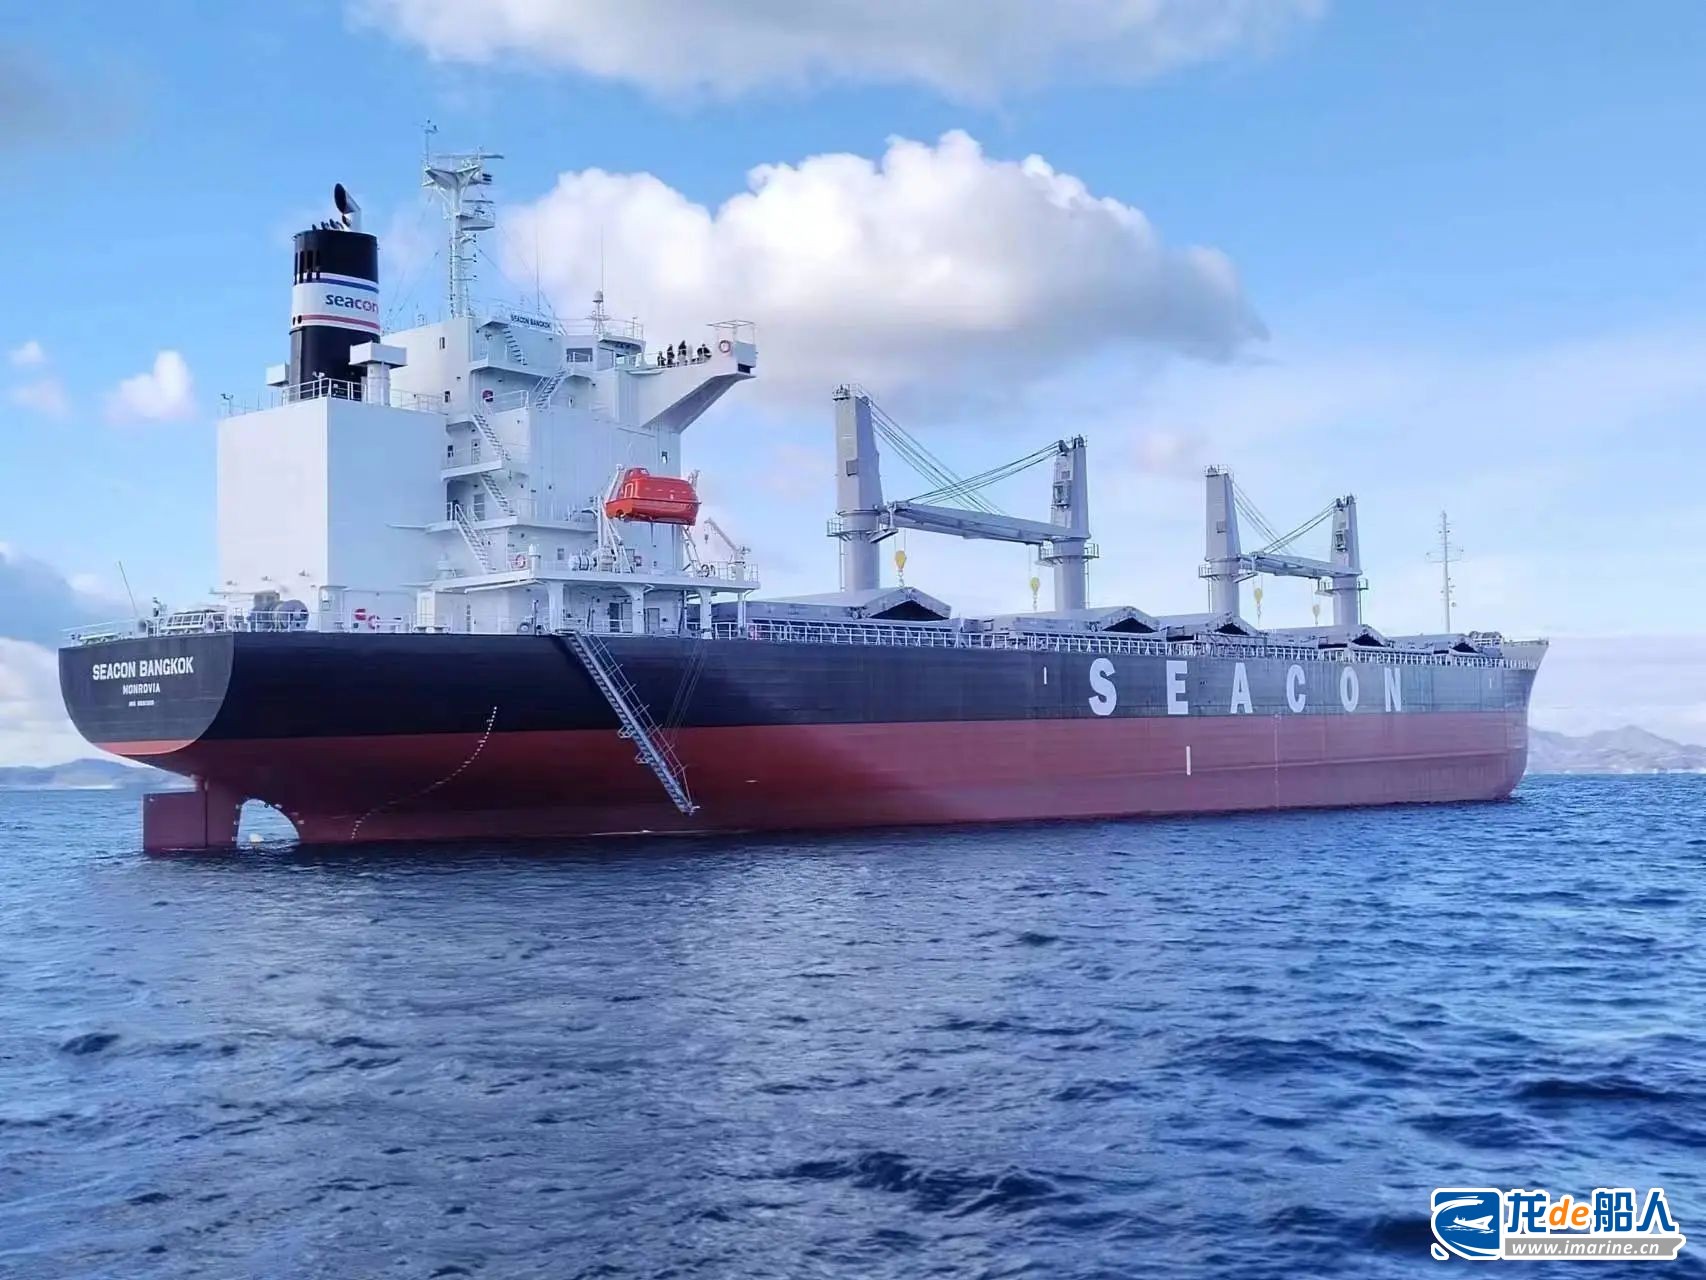 今治造船交付洲际船务40,000DWT新造船“Seacon Bangkok”轮